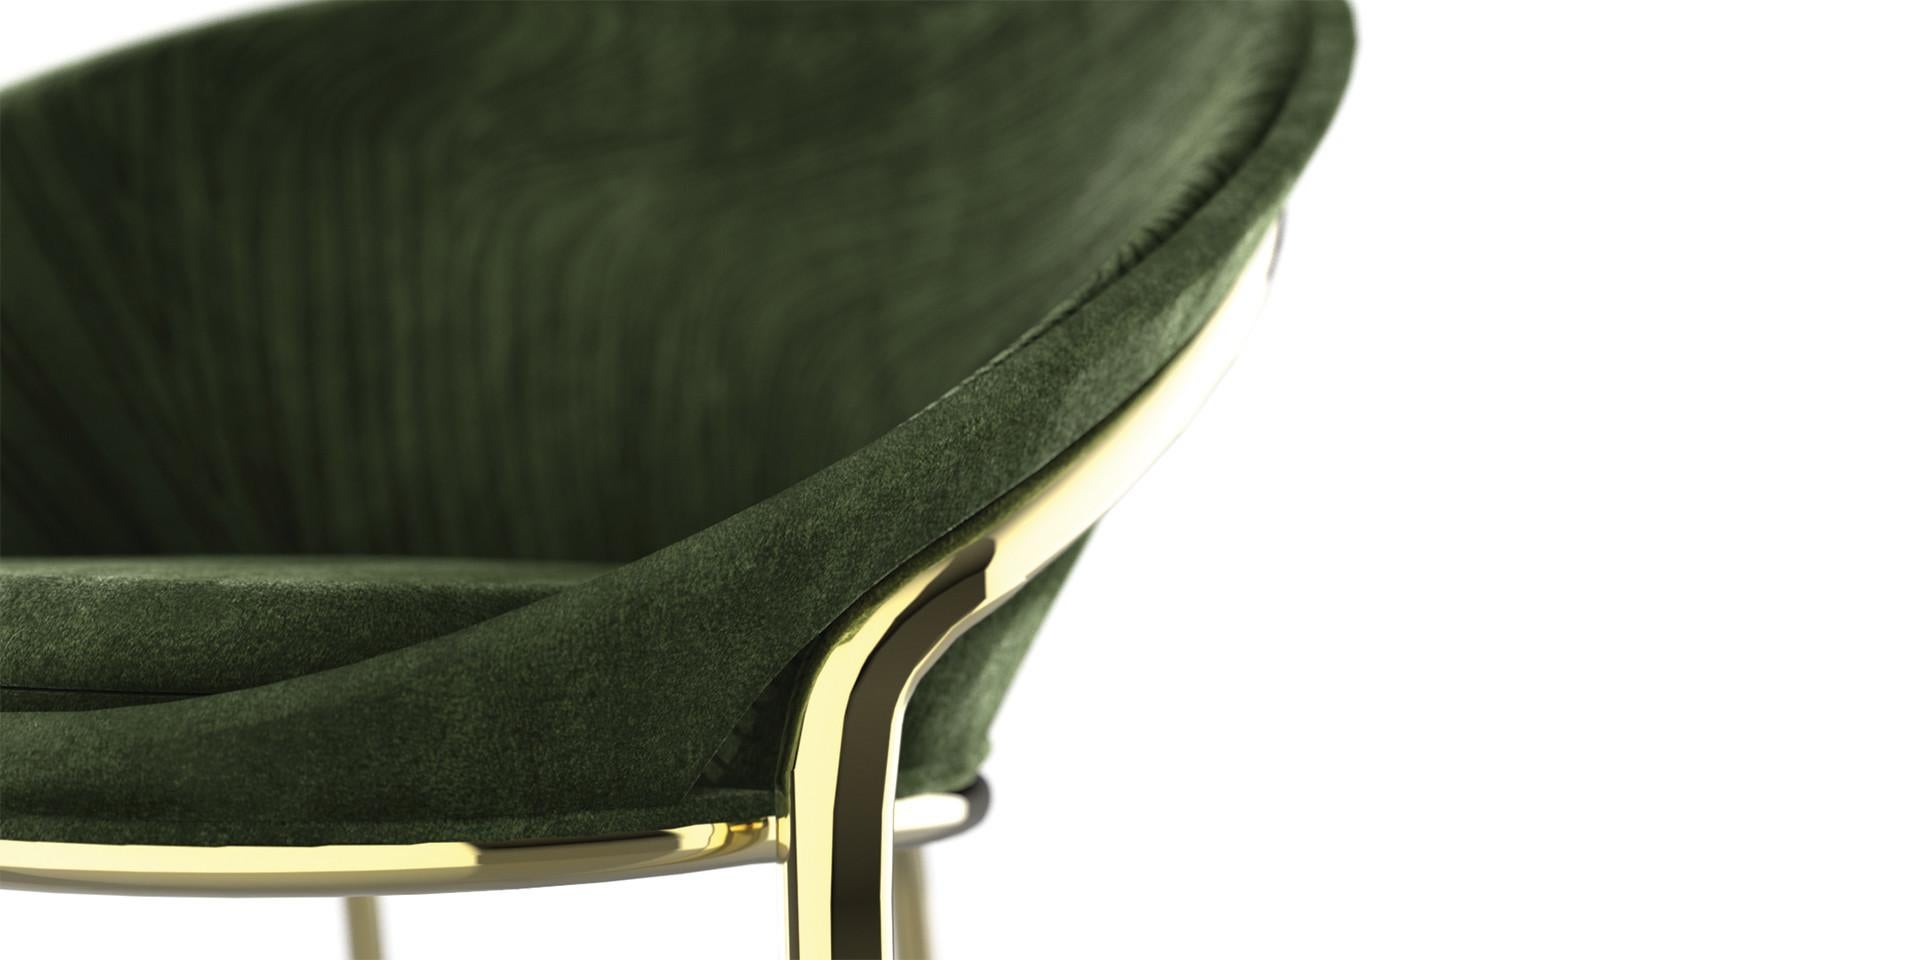 Dieser schöne und sehr elegante Stuhl wurde aus feinster Handwerkskunst für die außergewöhnlichsten Esszimmer und bemerkenswerten Interieurs geboren.

Polsterung aus weichem Wildlederstoff. 
Beine aus Metall mit Messing-Effekt in glänzender